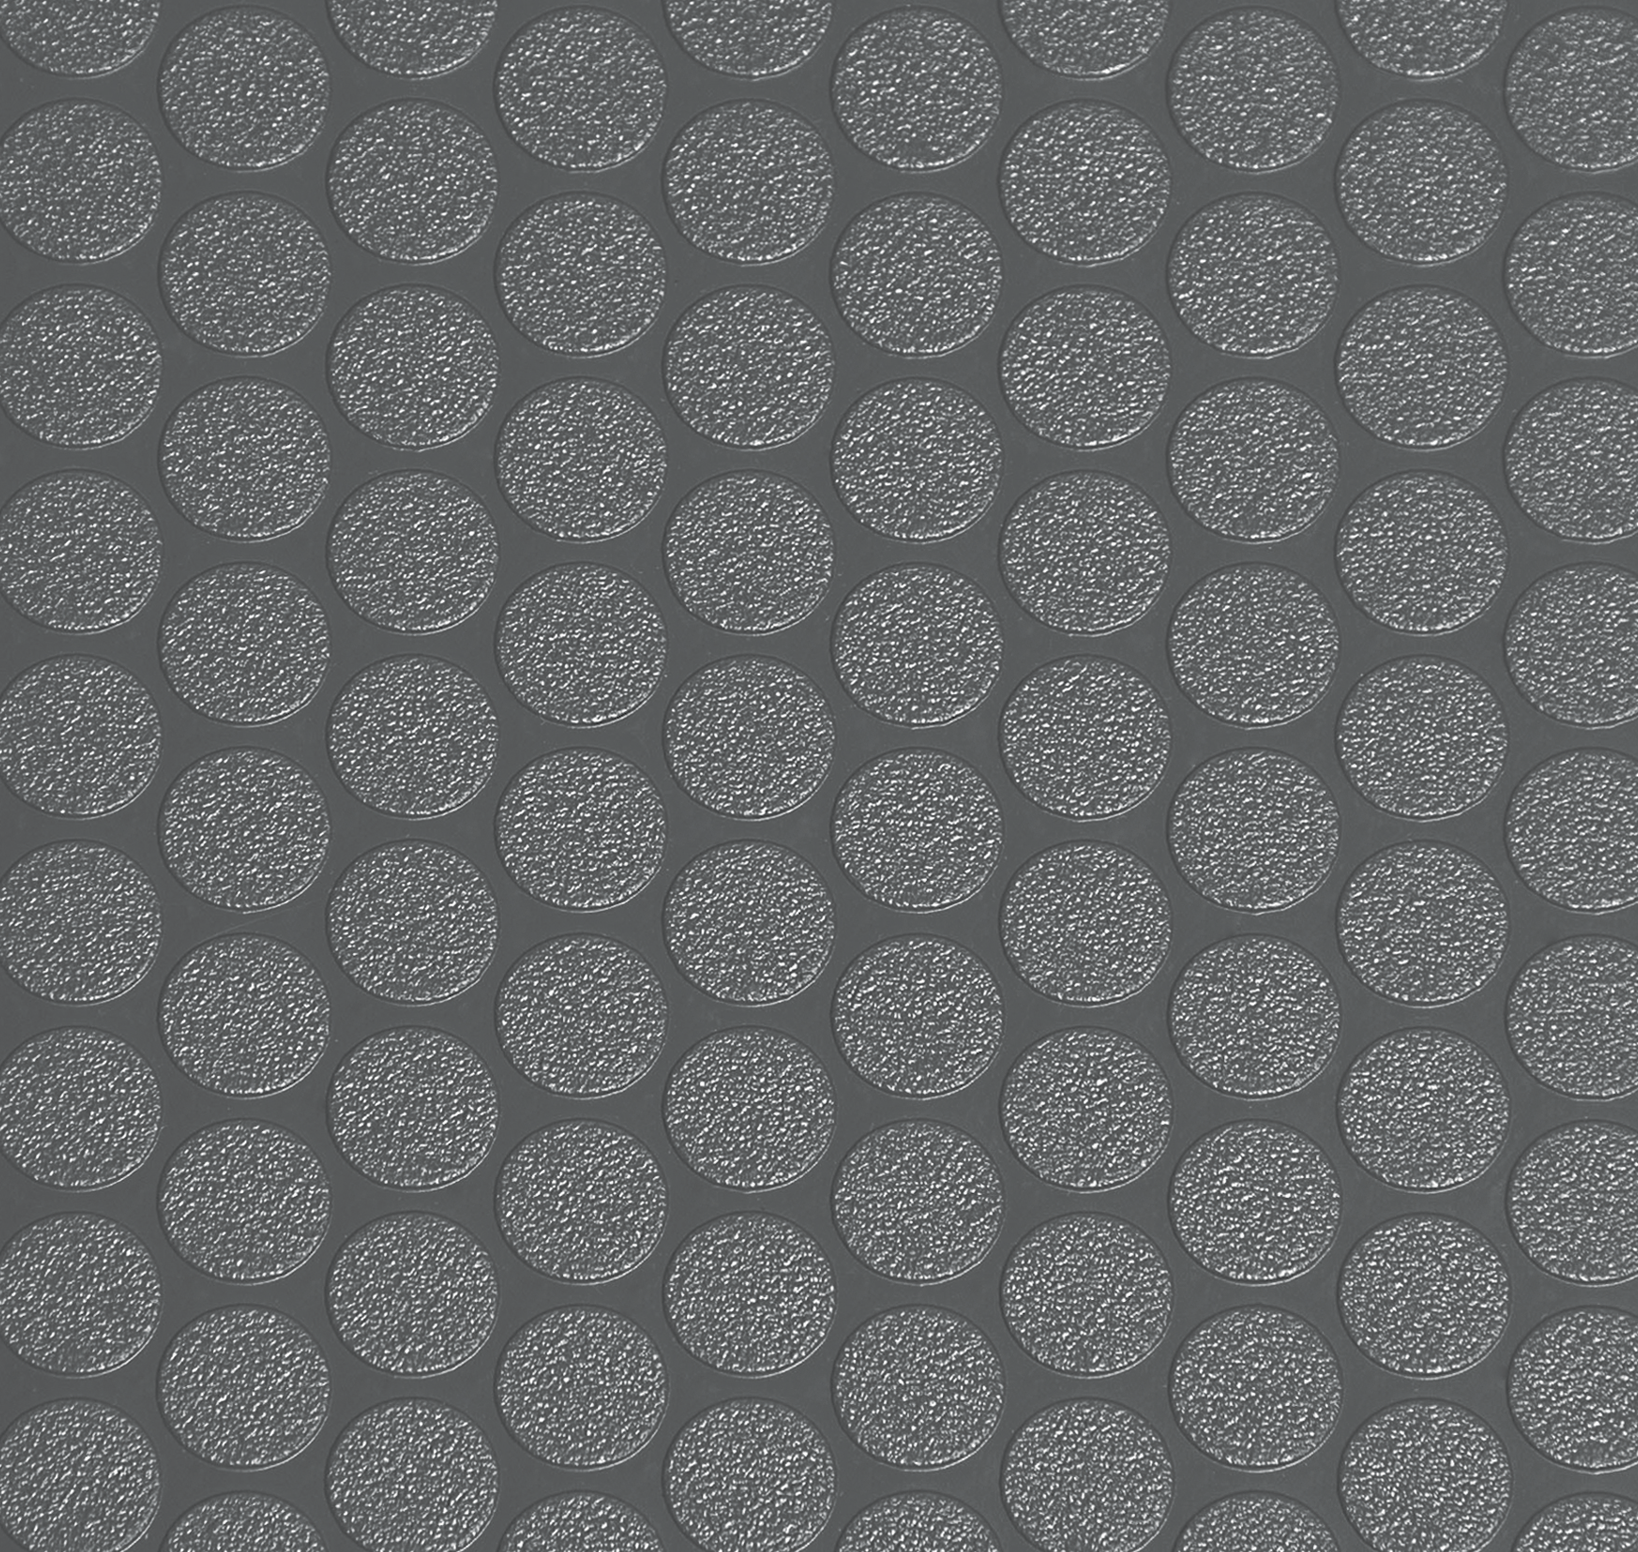 G-Floor 5 ft. x 10 ft. Small Coin Garage Floor Mat in Slate Grey